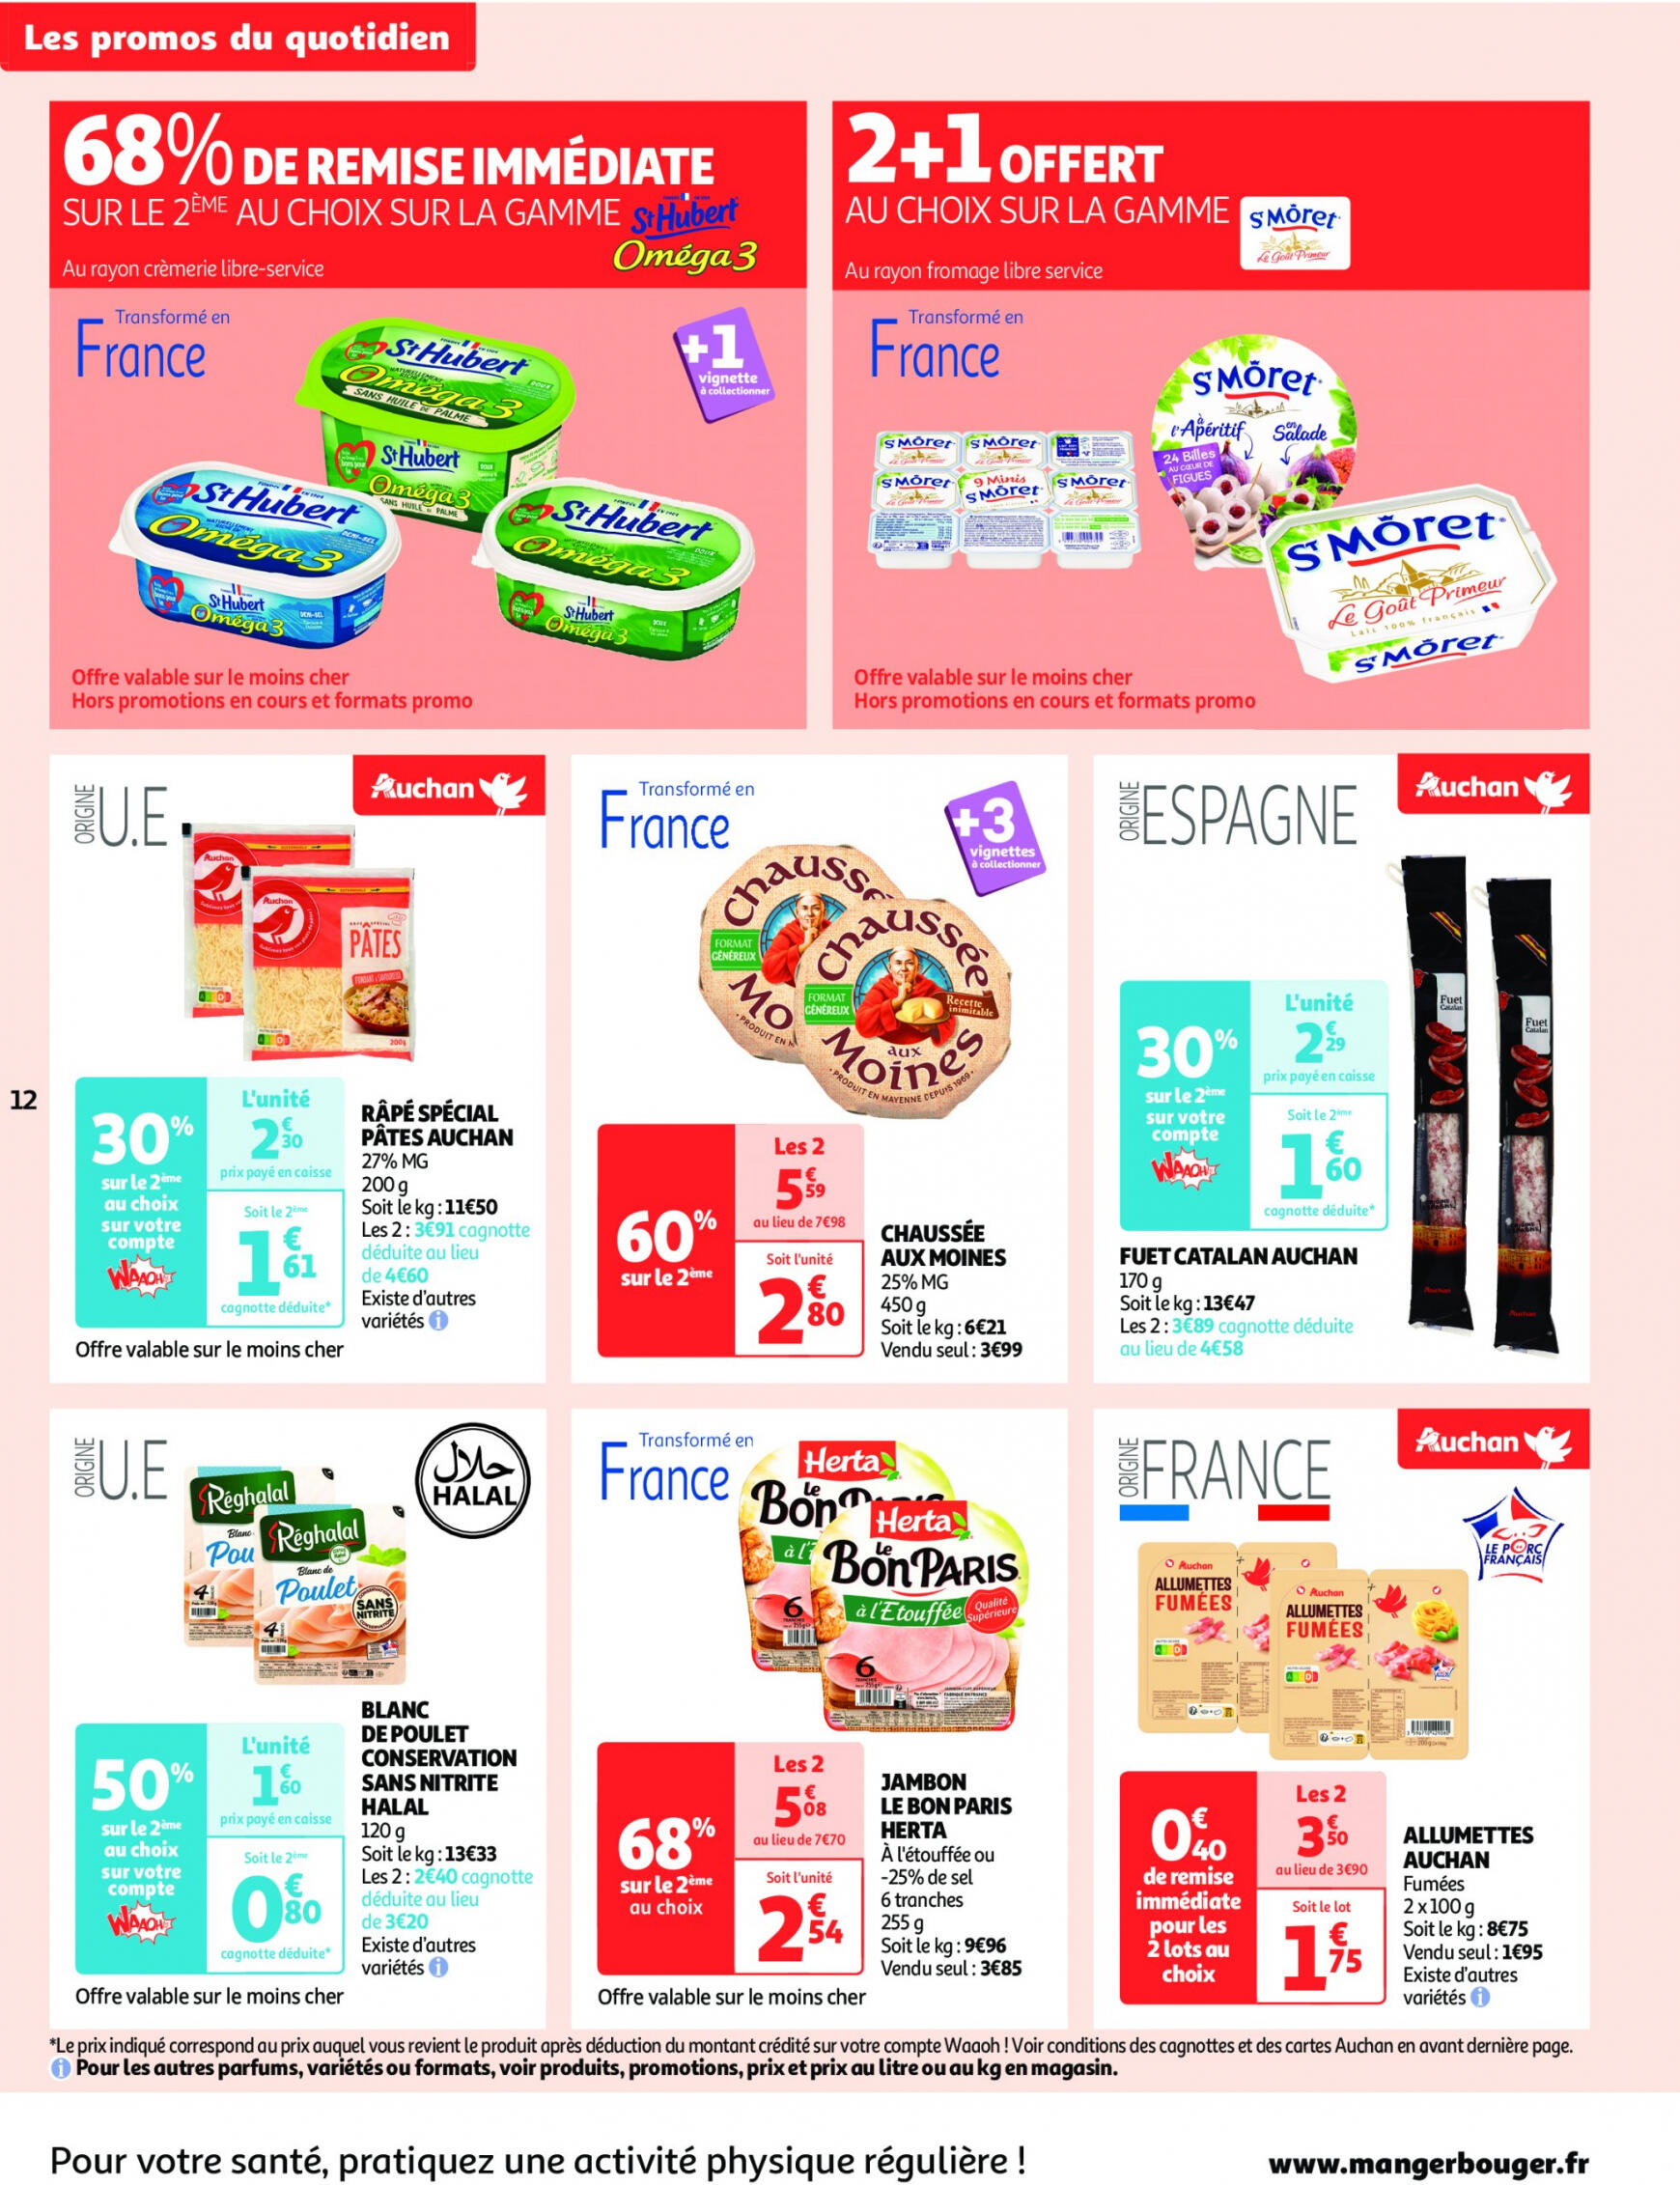 auchan - Auchan - On met le turbot sur les produits de la mer folder huidig 14.05. - 19.05. - page: 12